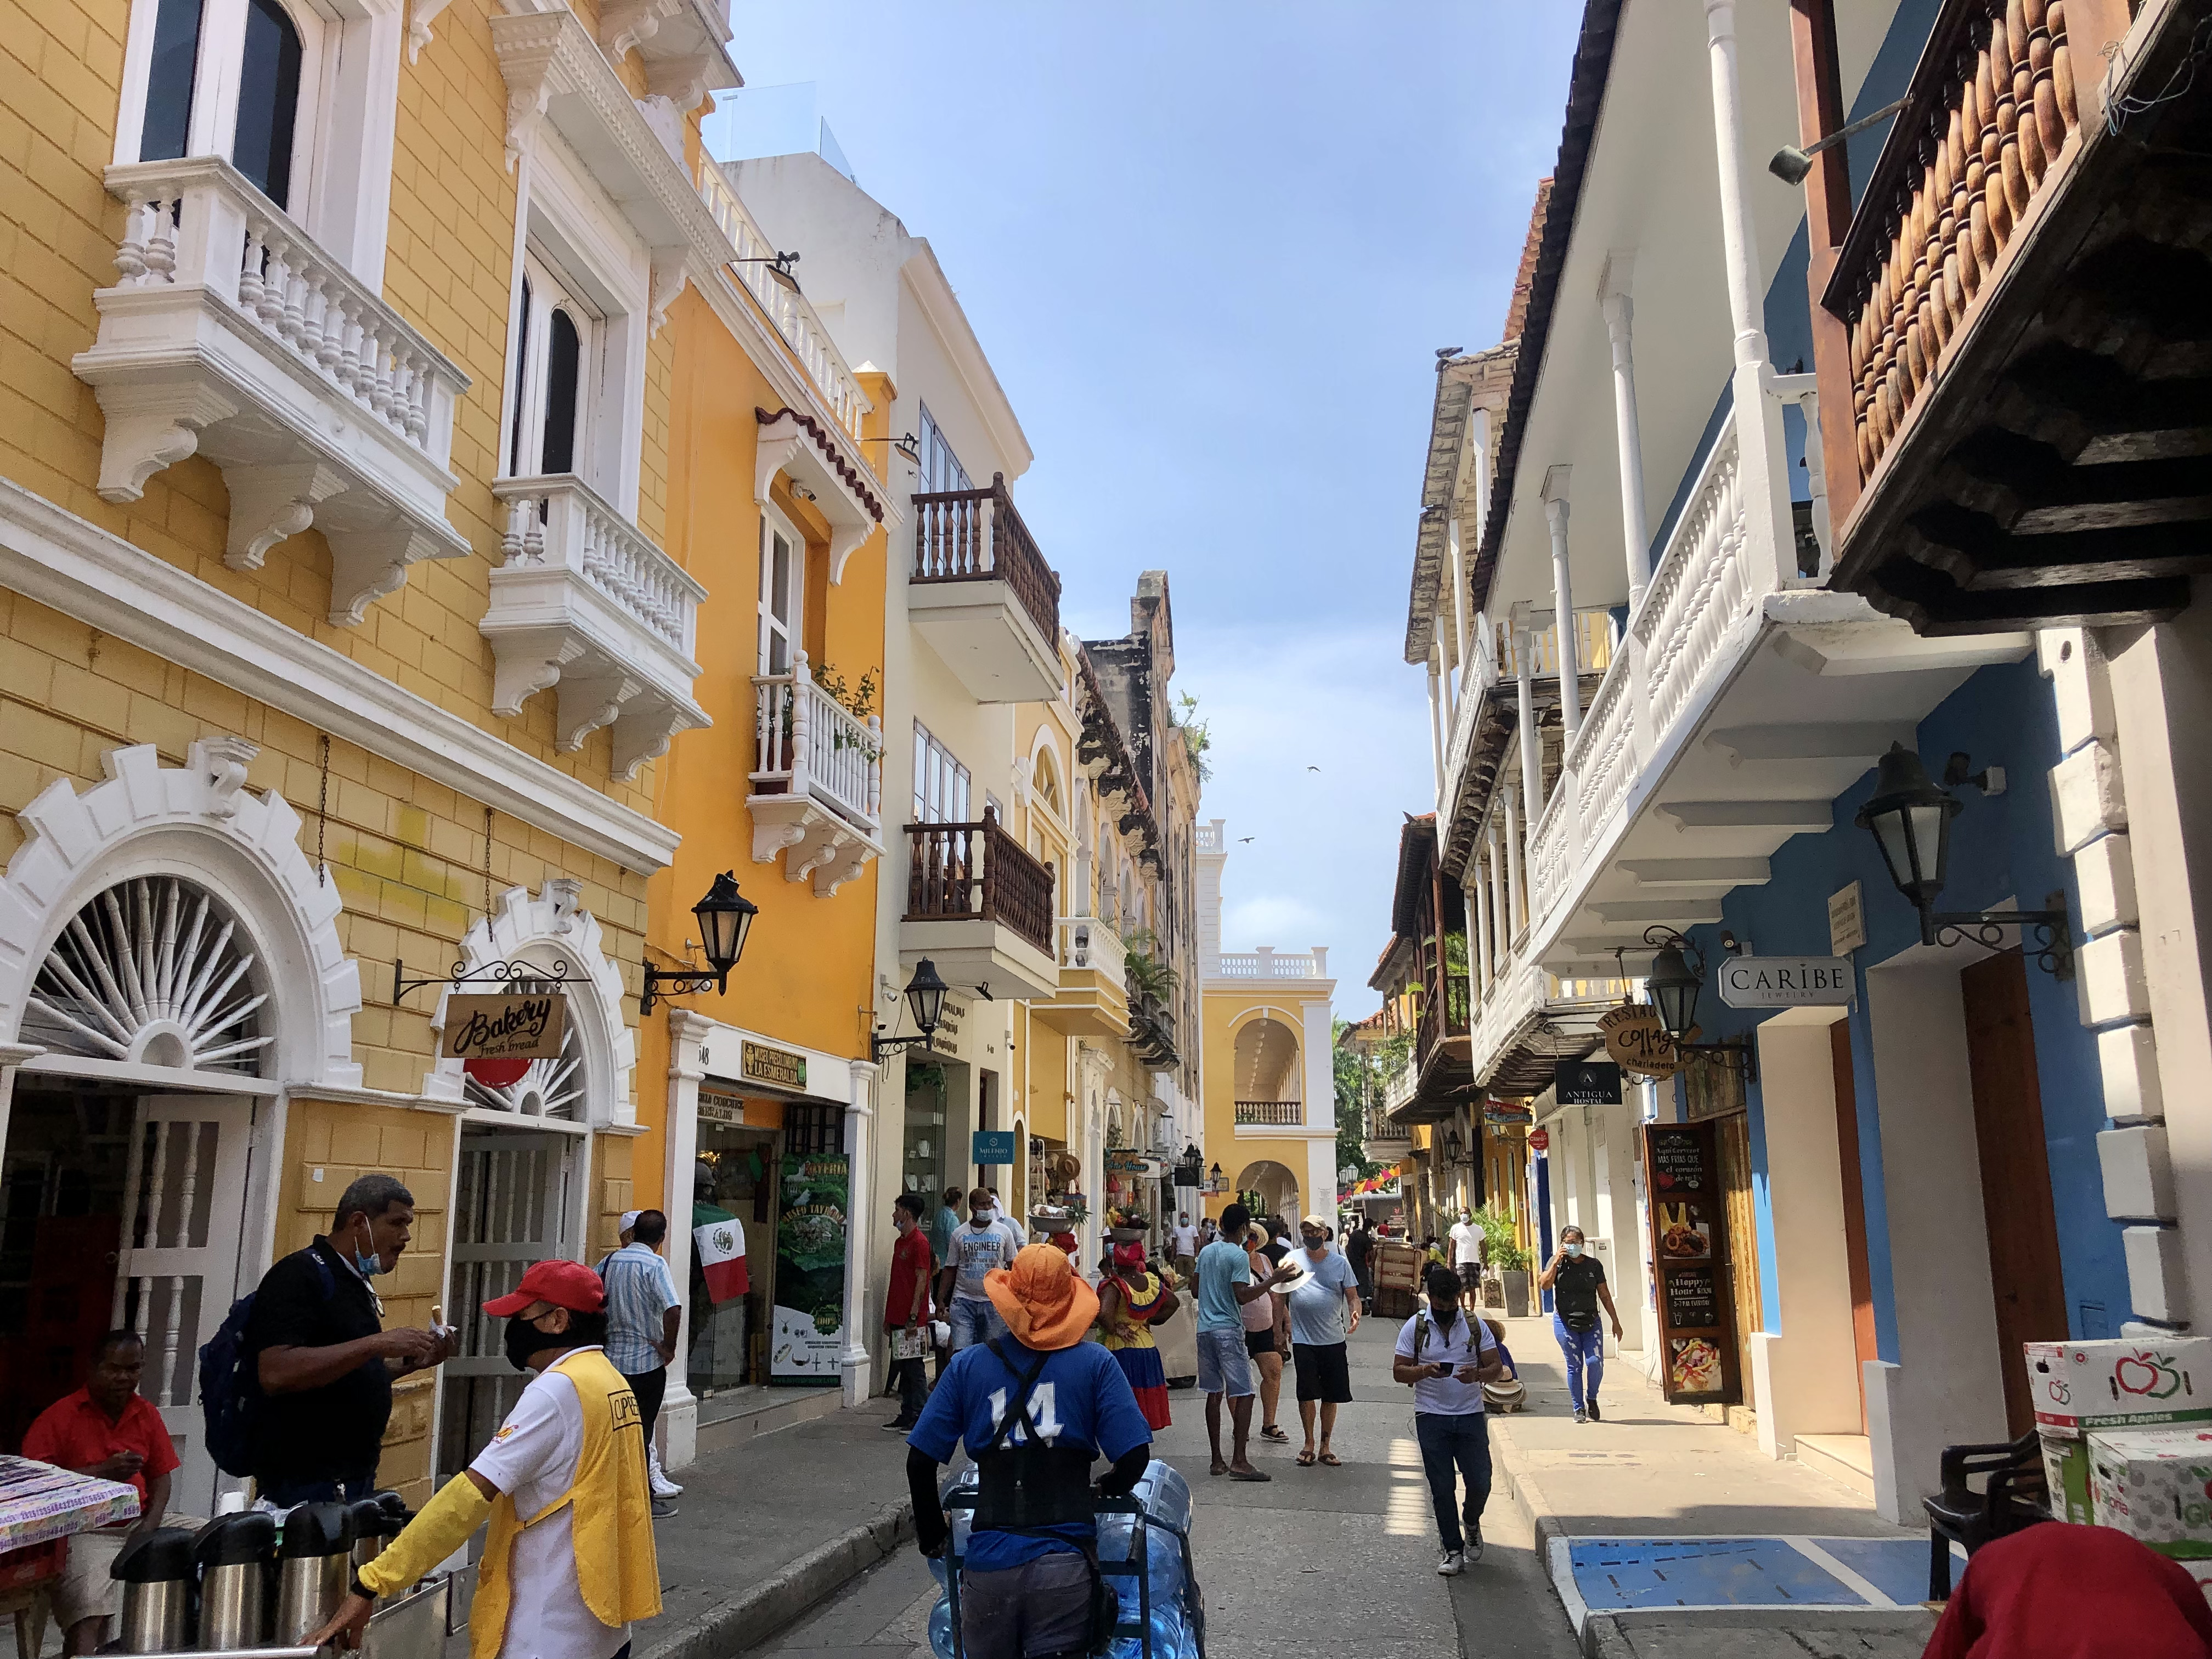 Jellegzetes óvárosi utca nappal, amikor Cartagena másik, az abszolút turistás arcát kapjuk. Hihetetlenül szép koloniális épületek között szakad ránk a forróság, önt el a magas páratartalom miatt a víz. Az élményt fokozza a kötelező, de nyílt terekben kevésbé hordott maszk.